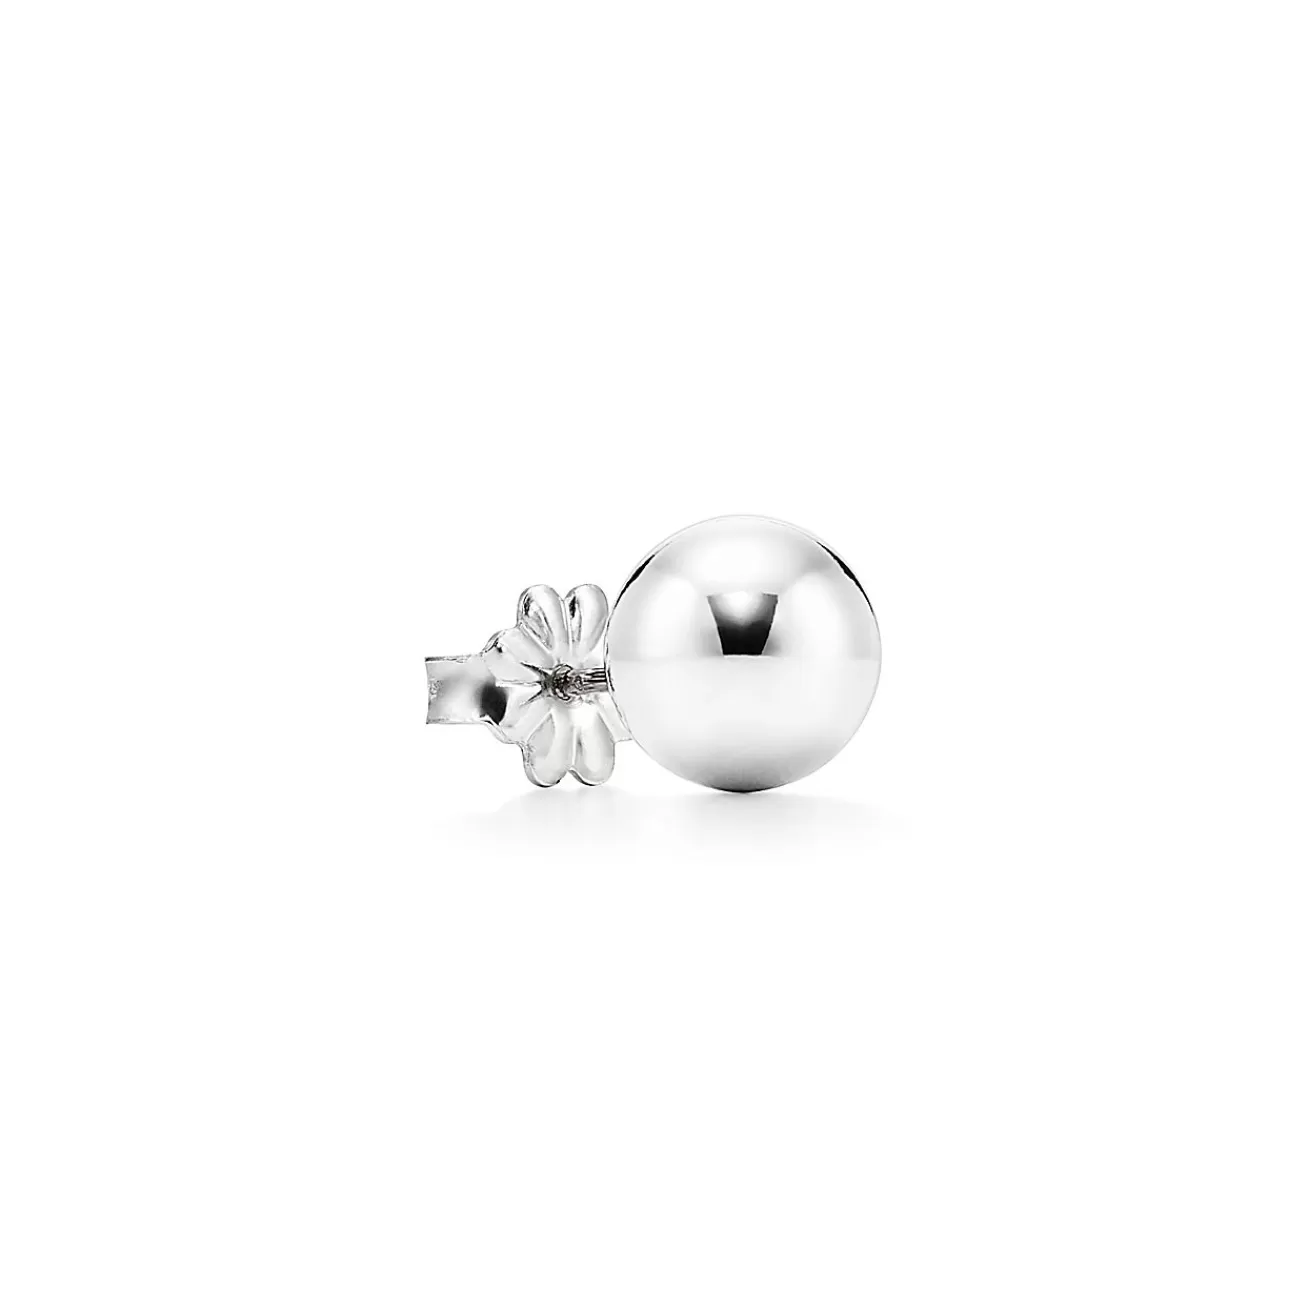 Tiffany & Co. Tiffany HardWear Ball Earrings in Silver, 8 mm | ^ Earrings | Gifts for Her